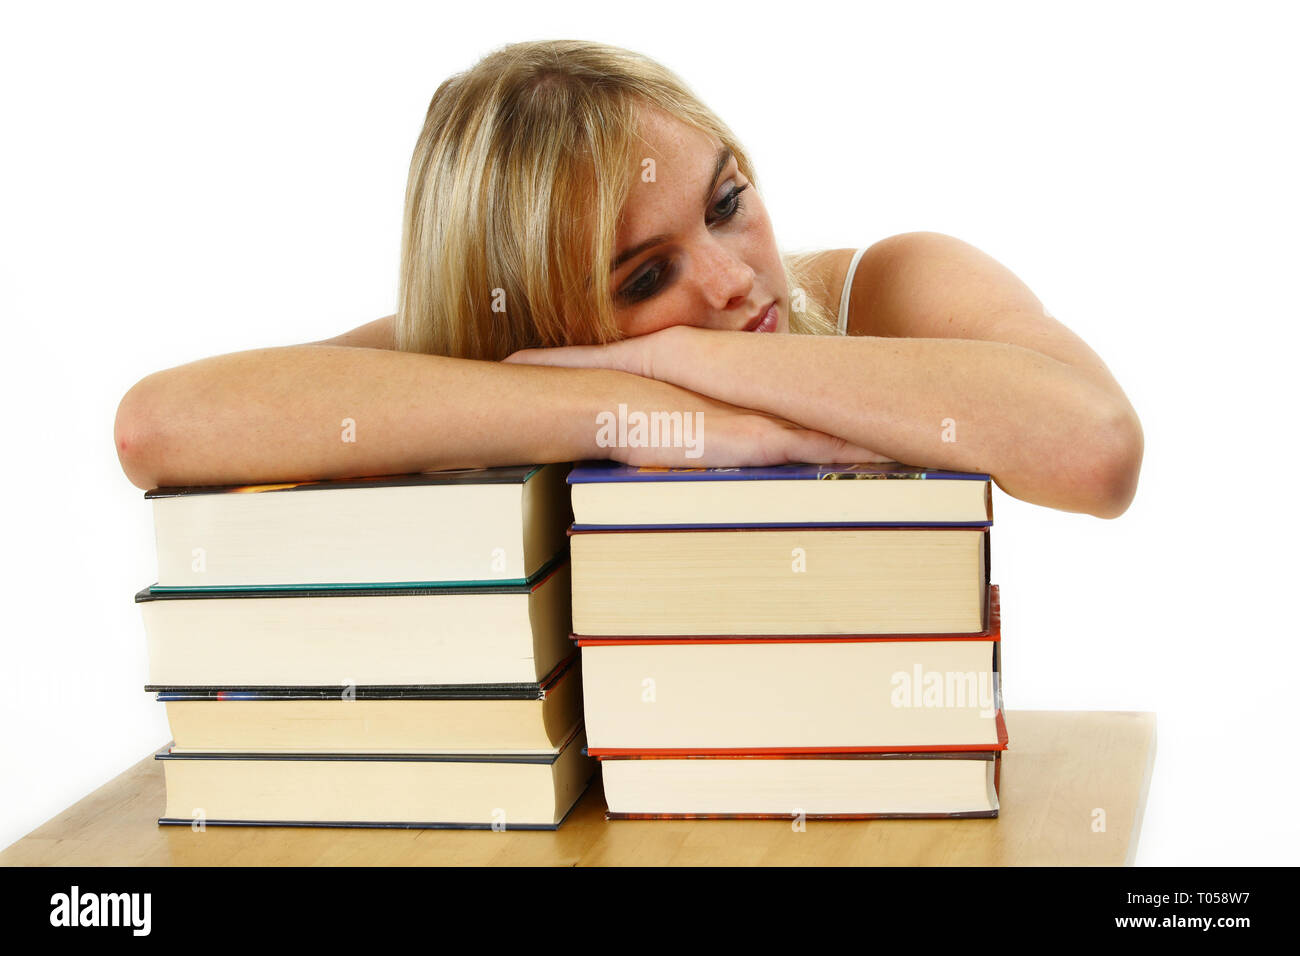 Eine junge Frau lehnt sich auf einem Stapel Bücher erschöpft. Gegen einen weißen Hintergrund. Stockfoto